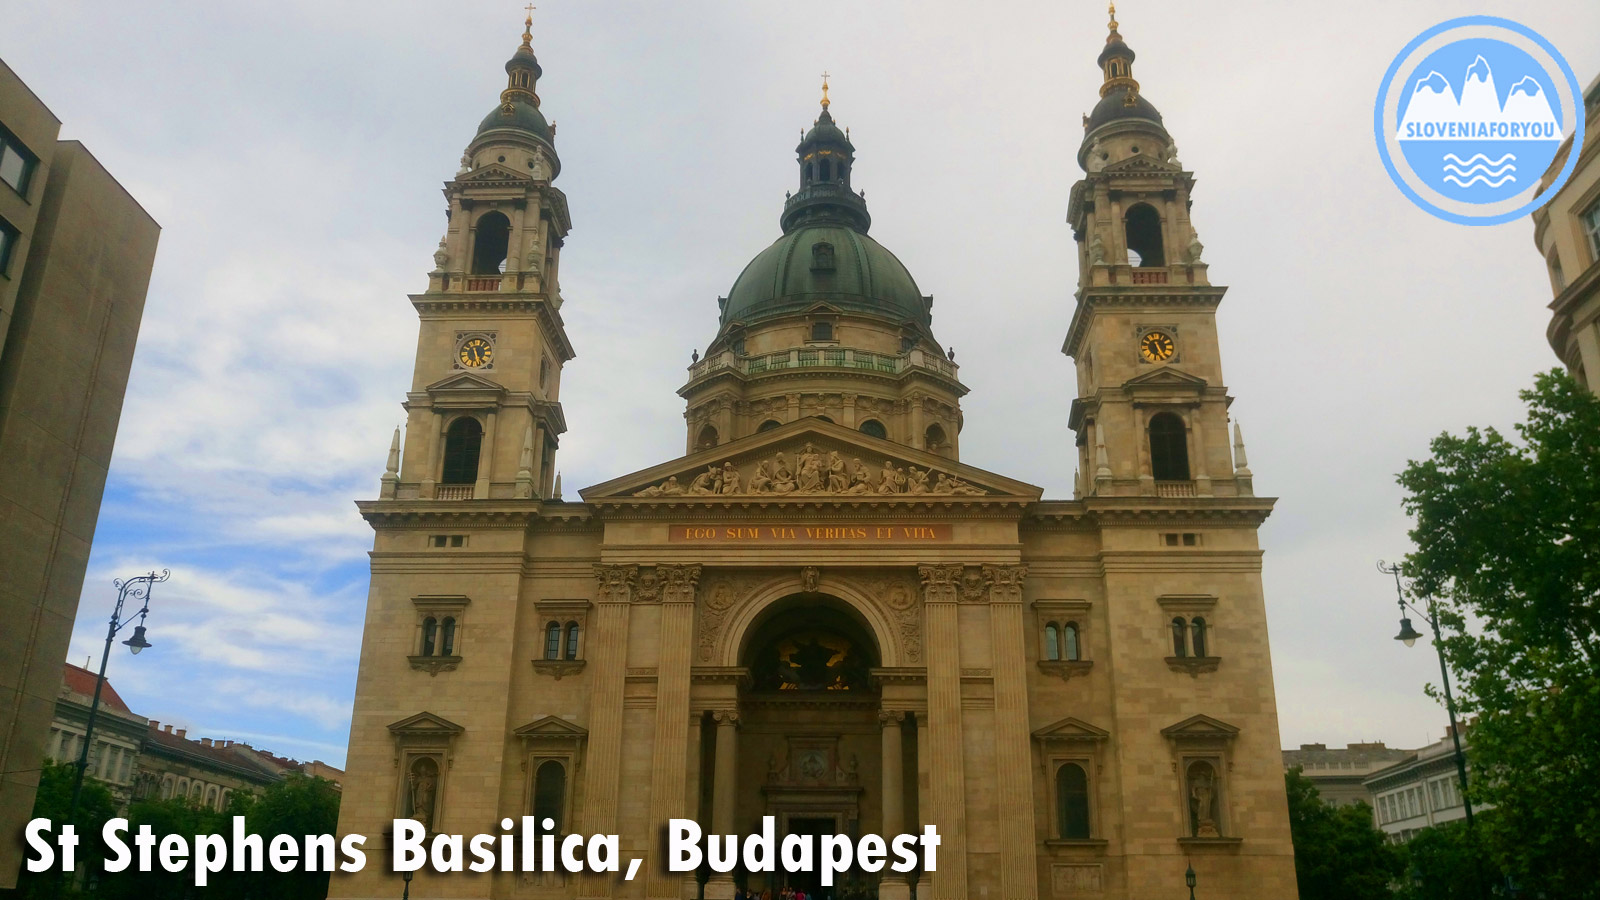 St Stephens Basilica, Budapest, Sloveniaforyou